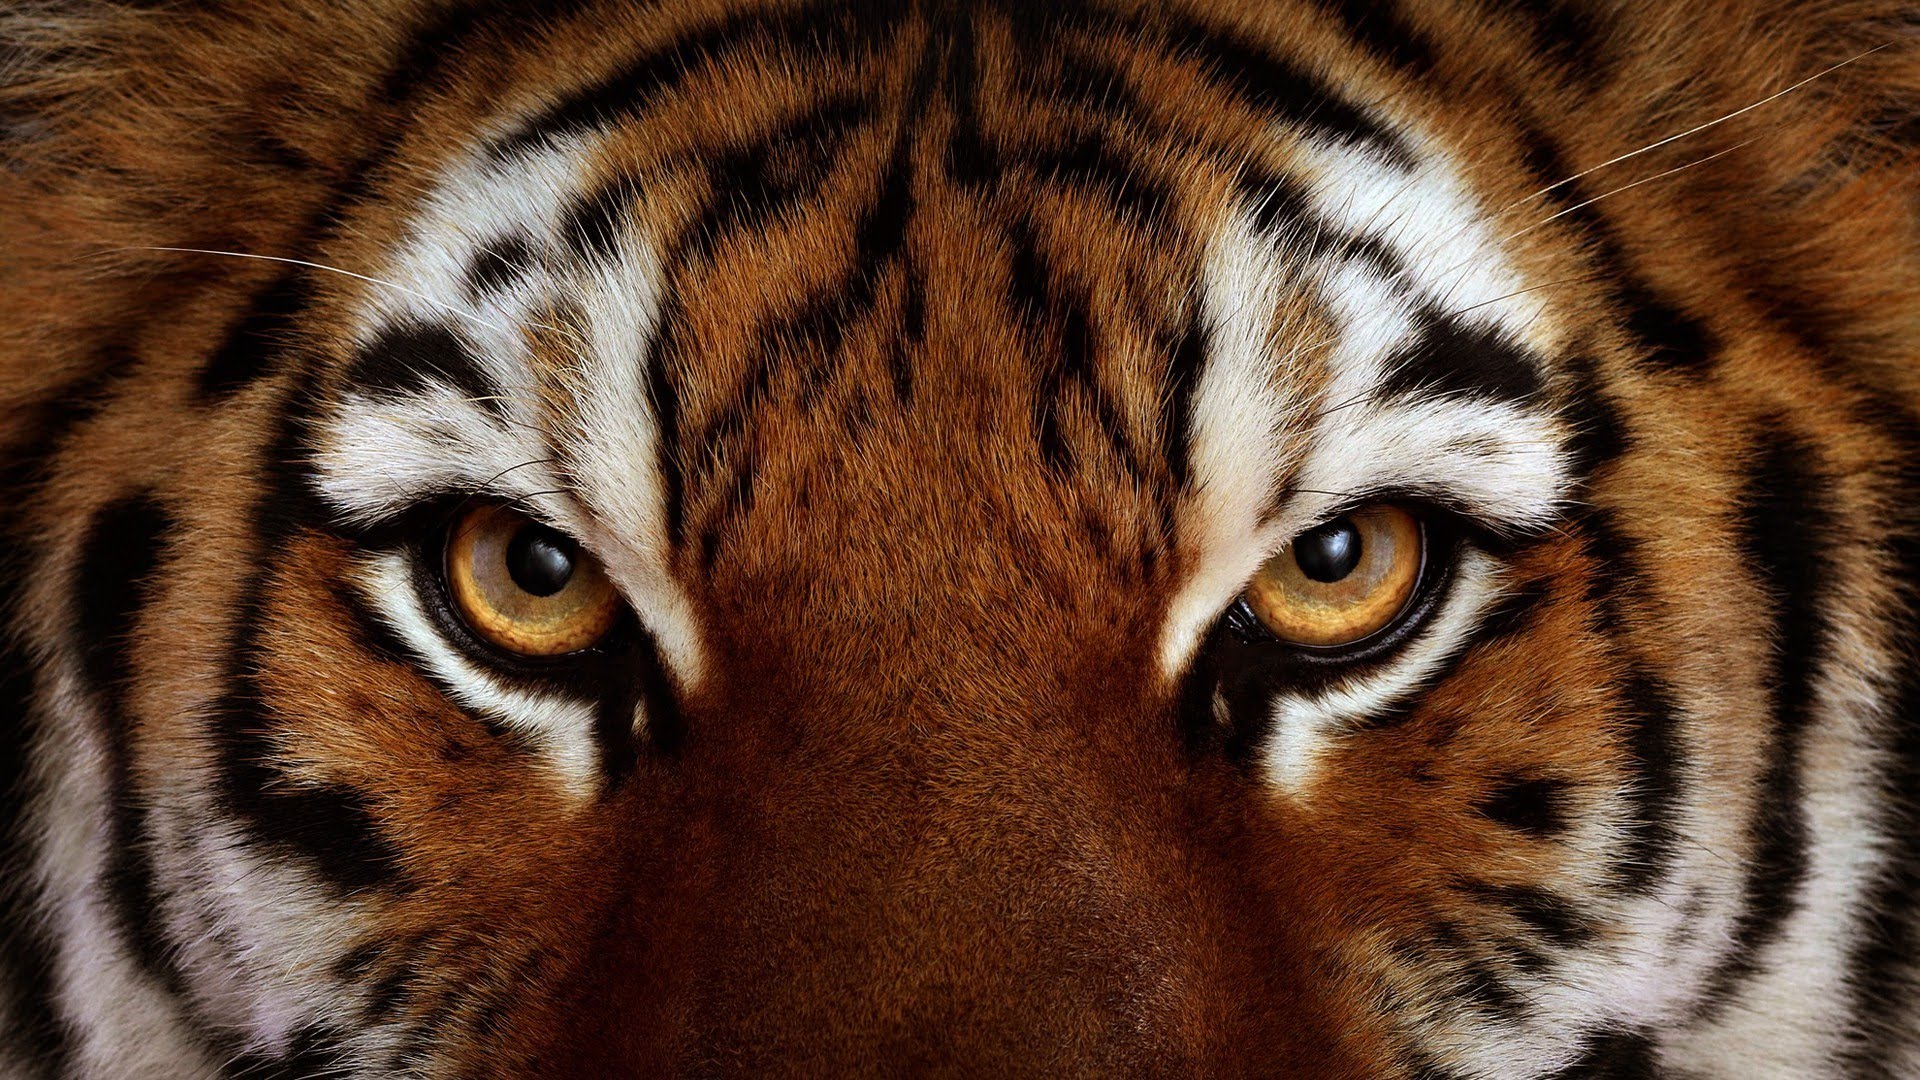 tigre wallpaper,mammal,tiger,vertebrate,wildlife,terrestrial animal